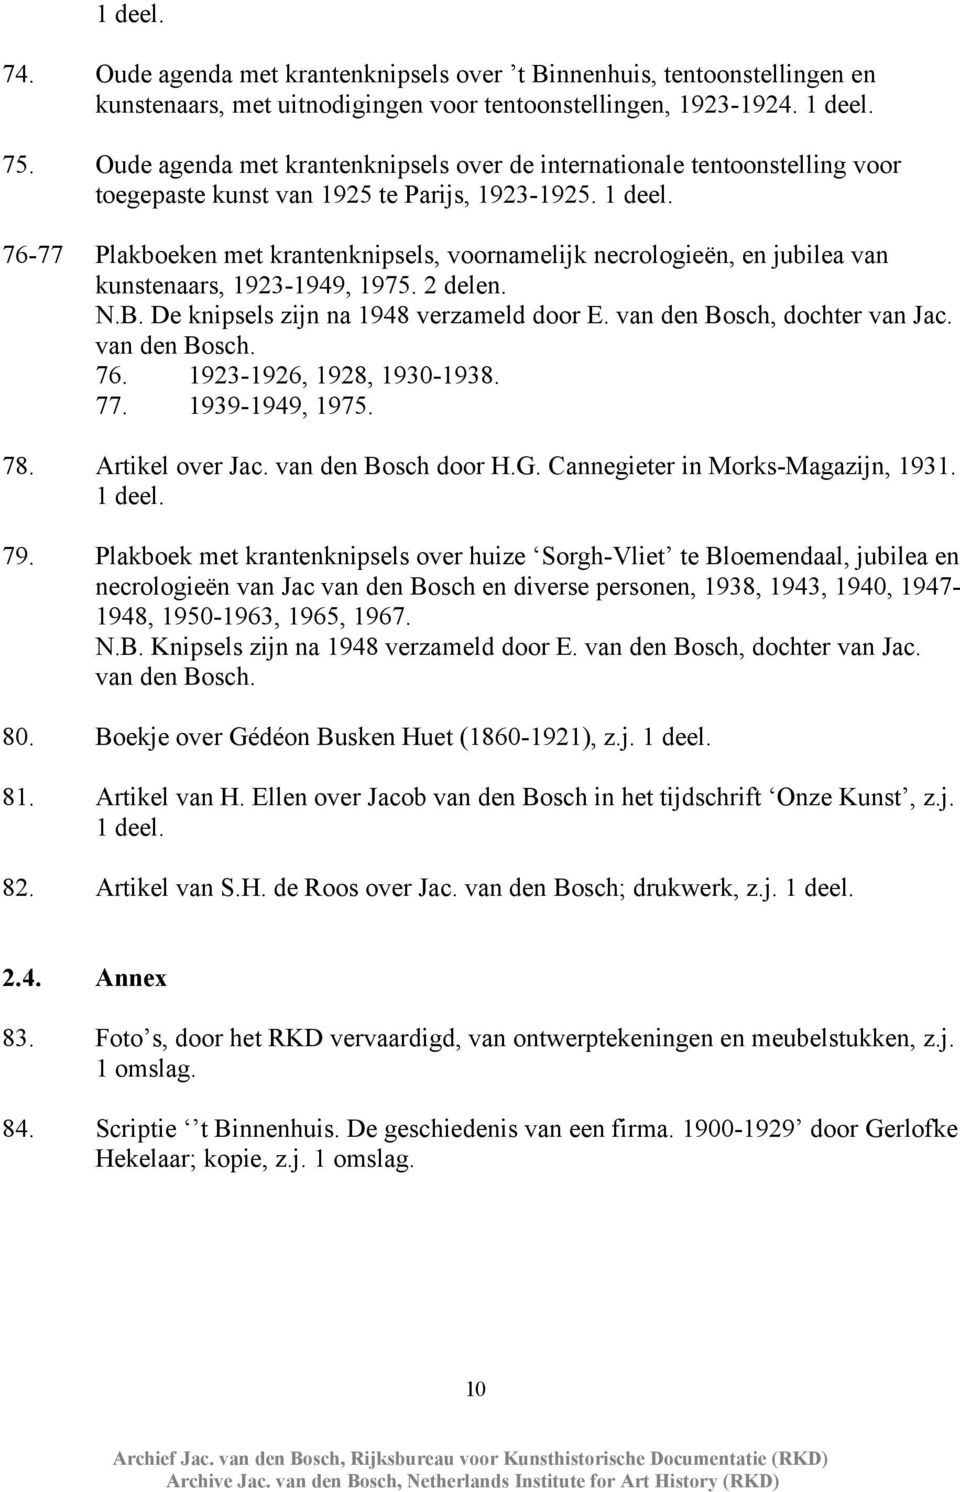 76-77 Plakboeken met krantenknipsels, voornamelijk necrologieën, en jubilea van kunstenaars, 1923-1949, 1975. 2 delen. N.B. De knipsels zijn na 1948 verzameld door E. van den Bosch, dochter van Jac.